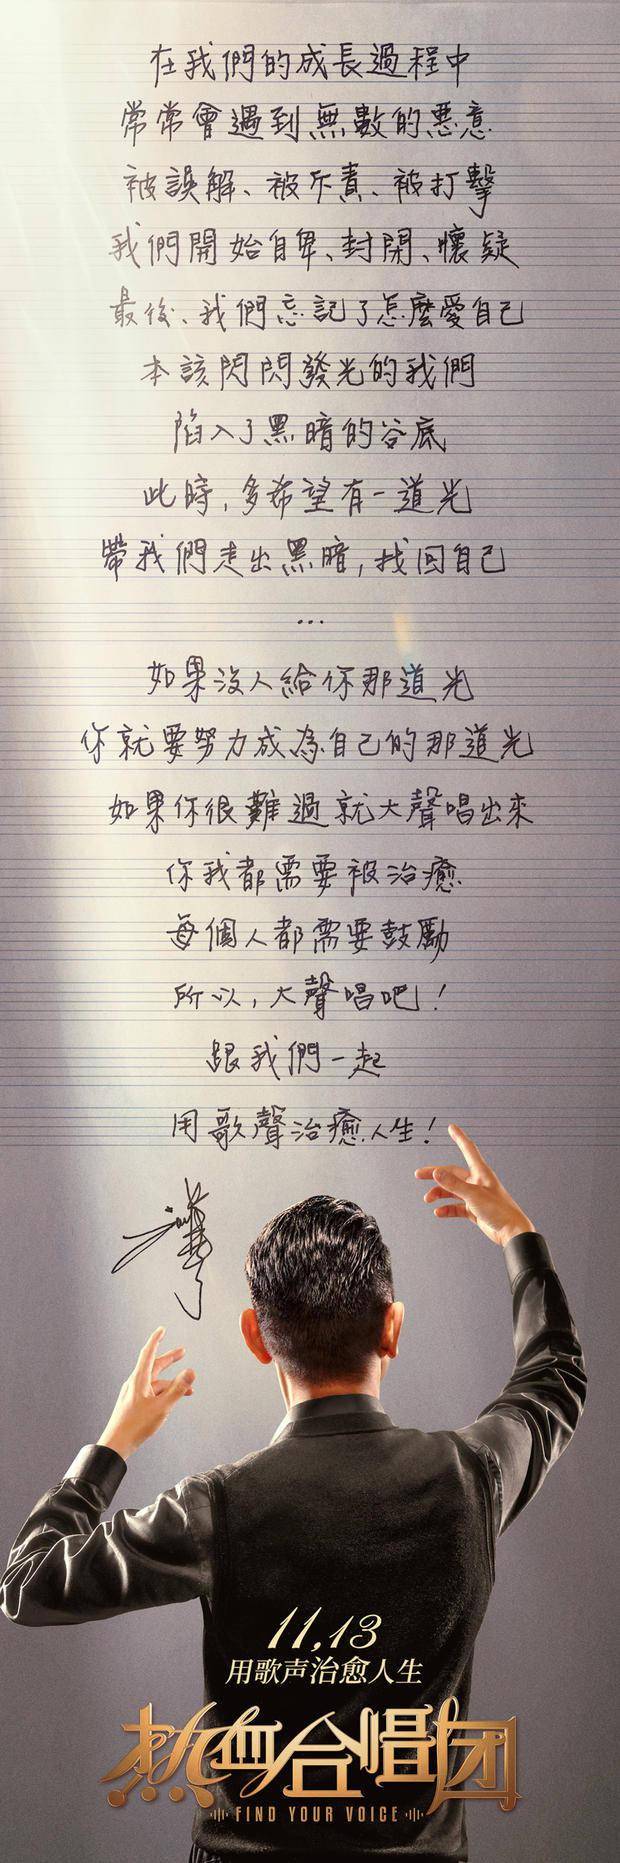 电影《热血合唱团》刘德华手写信海报 返回搜             责任编辑